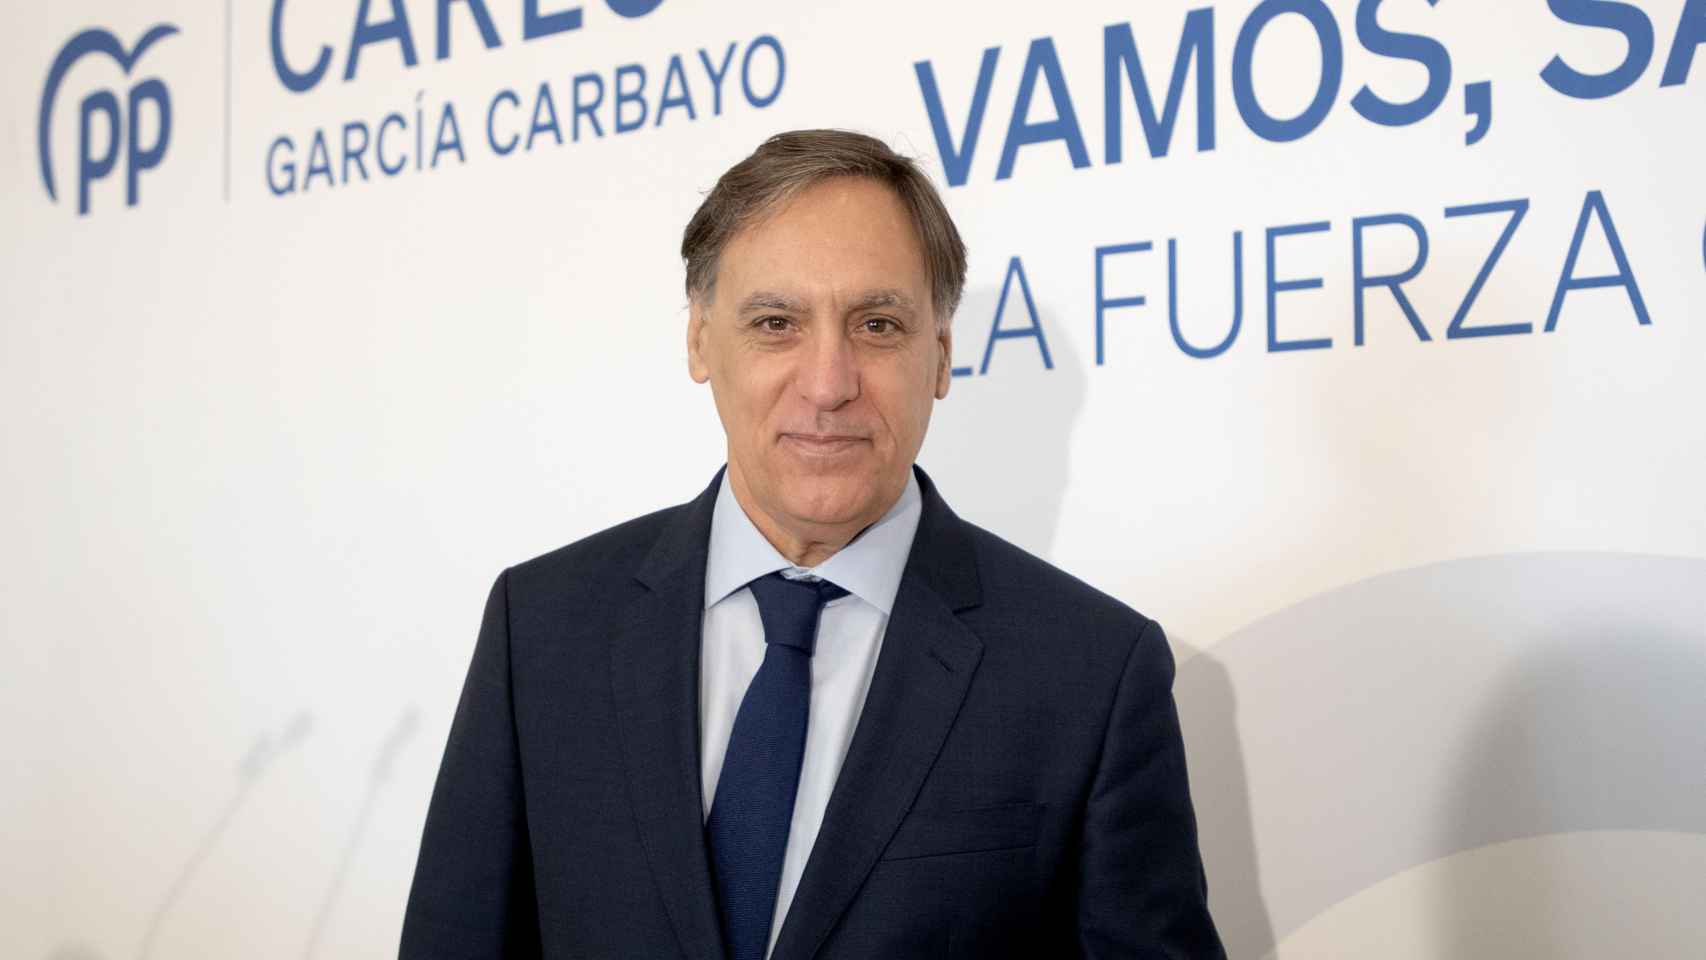 Carlos García Carbayo durante su acto para presentar su precandidatura a la Presidencia del Partido Popular de Salamanca.